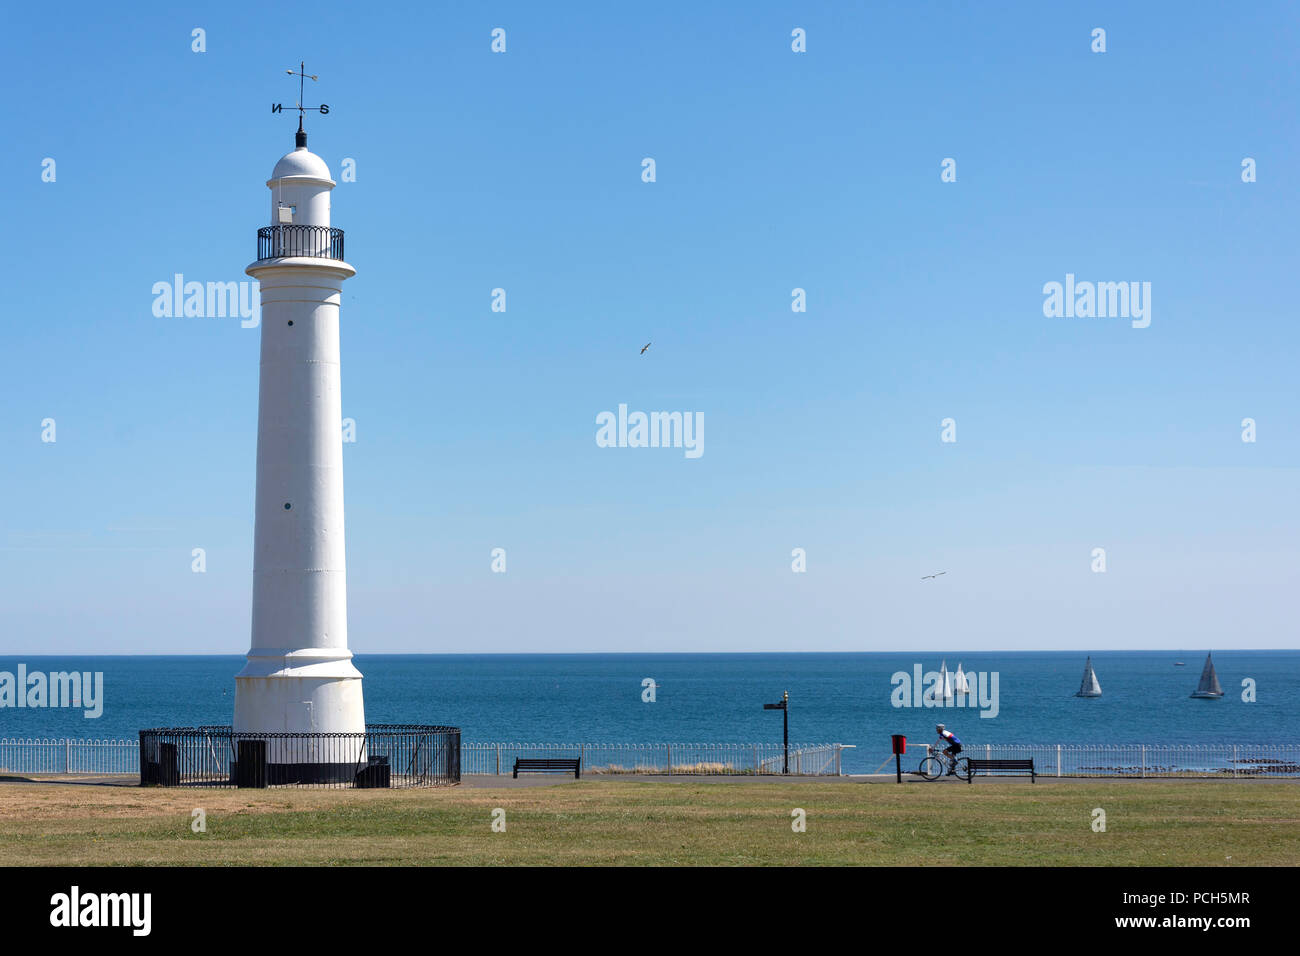 Meik's Cast Iron Lighthouse and promenade, Seaburn, Sunderland, Tyne and Wear, England, United Kingdom Stock Photo